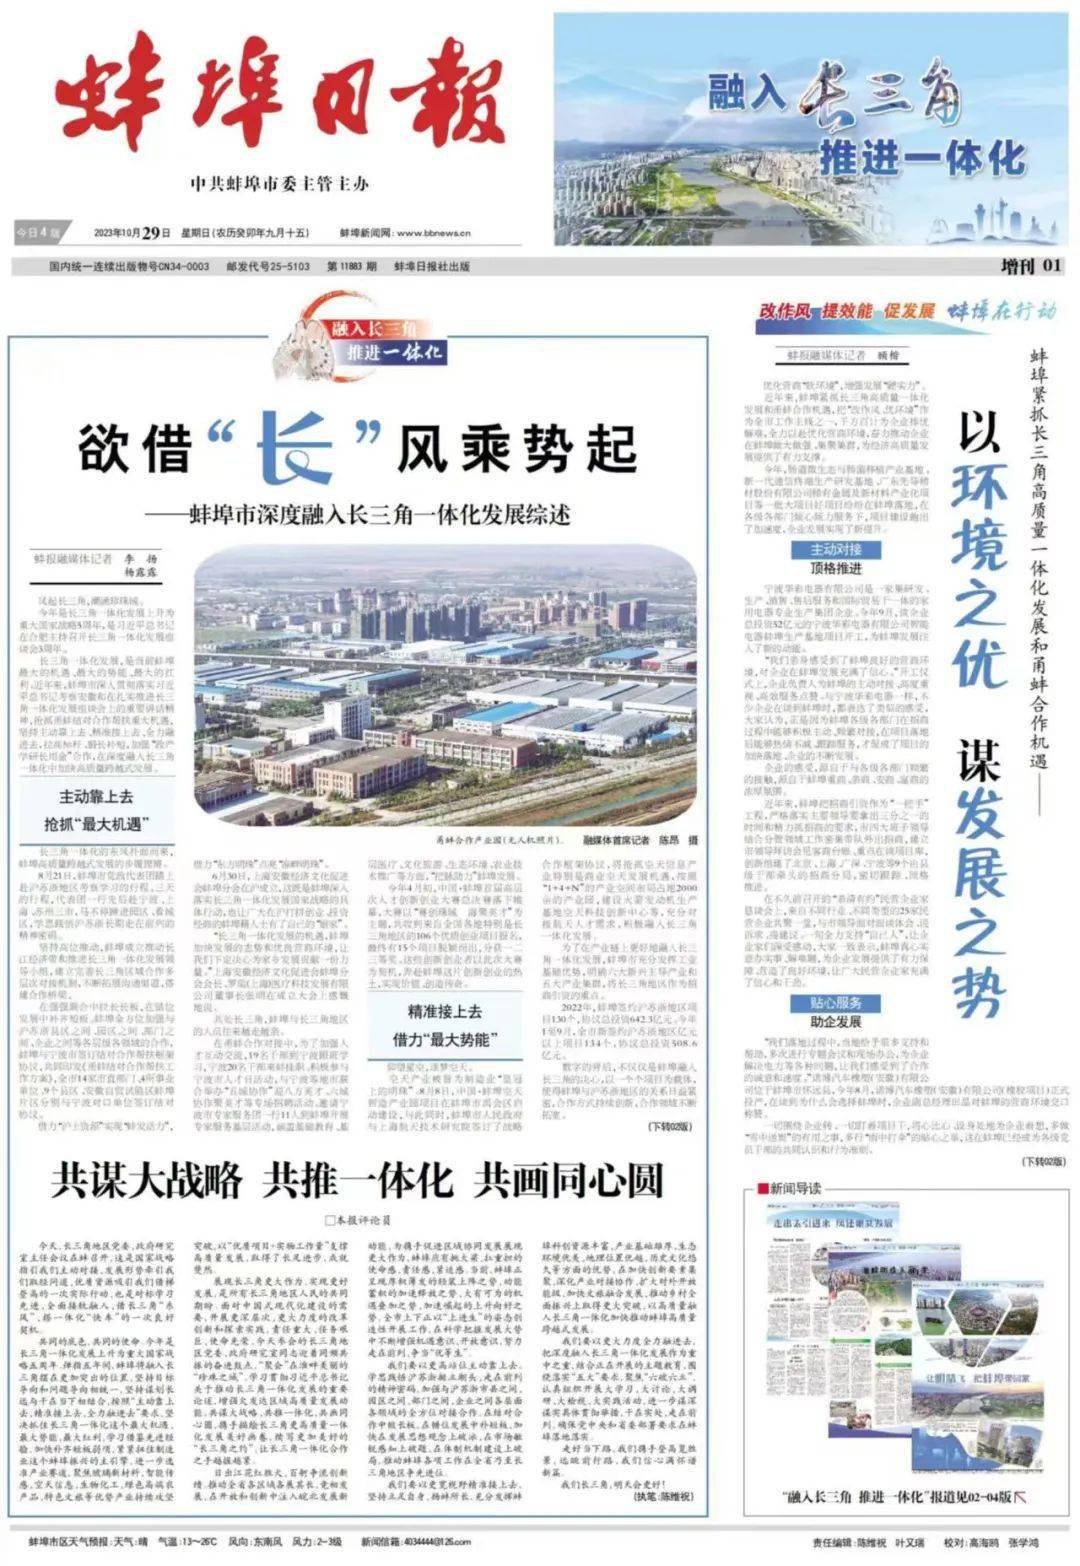 人民日报、新华社、人民网及长三角城市主流媒体新闻客户端纷纷关注蚌埠……